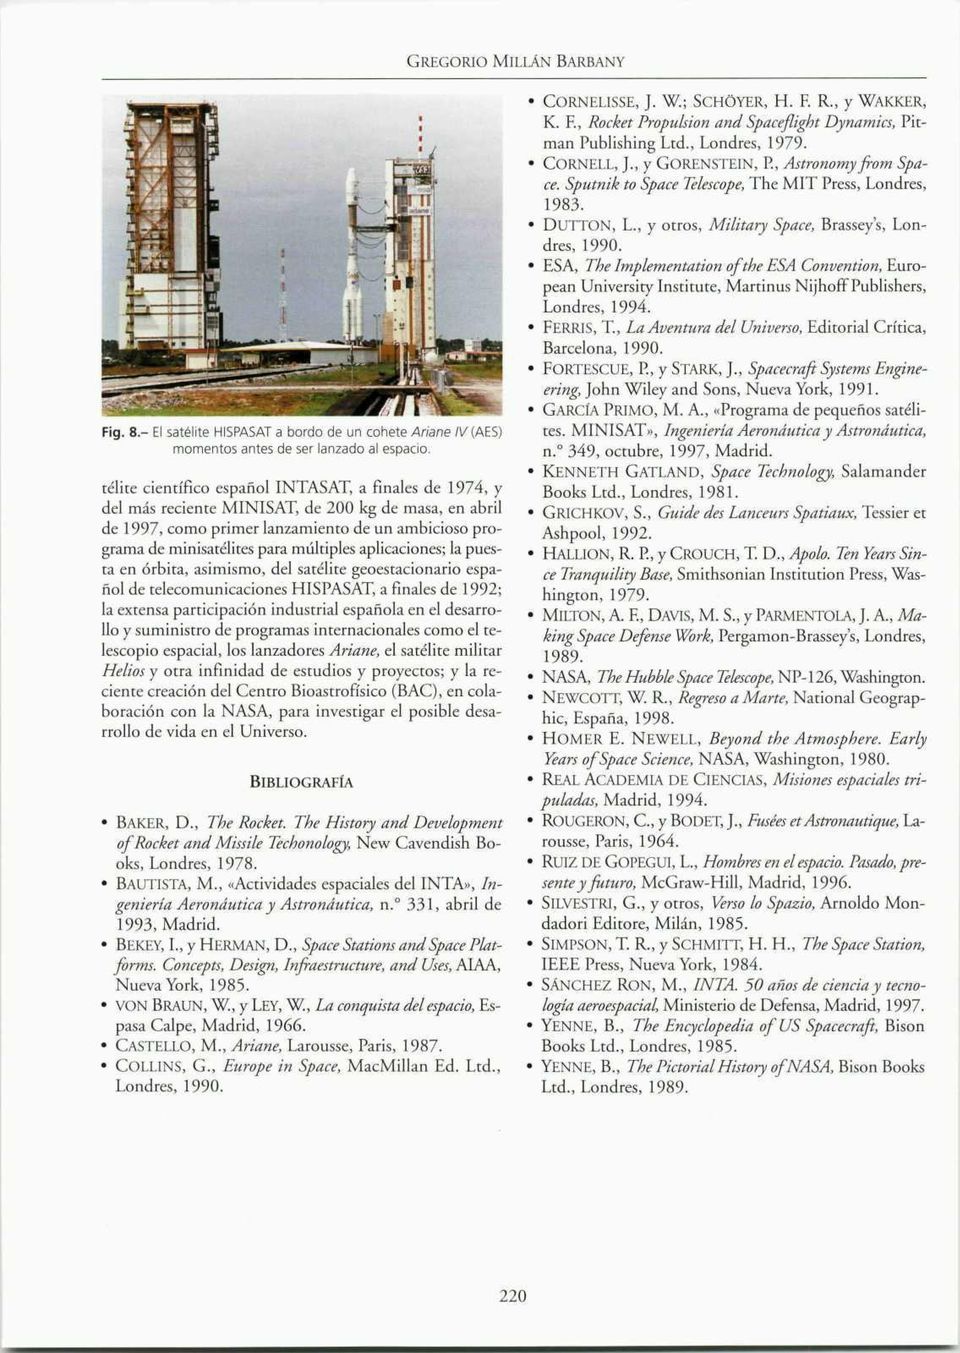 aplicaciones; la puesta en órbita, asimismo, del satélite geoestacionario español de telecomunicaciones HISPASAT, a finales de 1992; la extensa participación industrial española en el desarrollo y